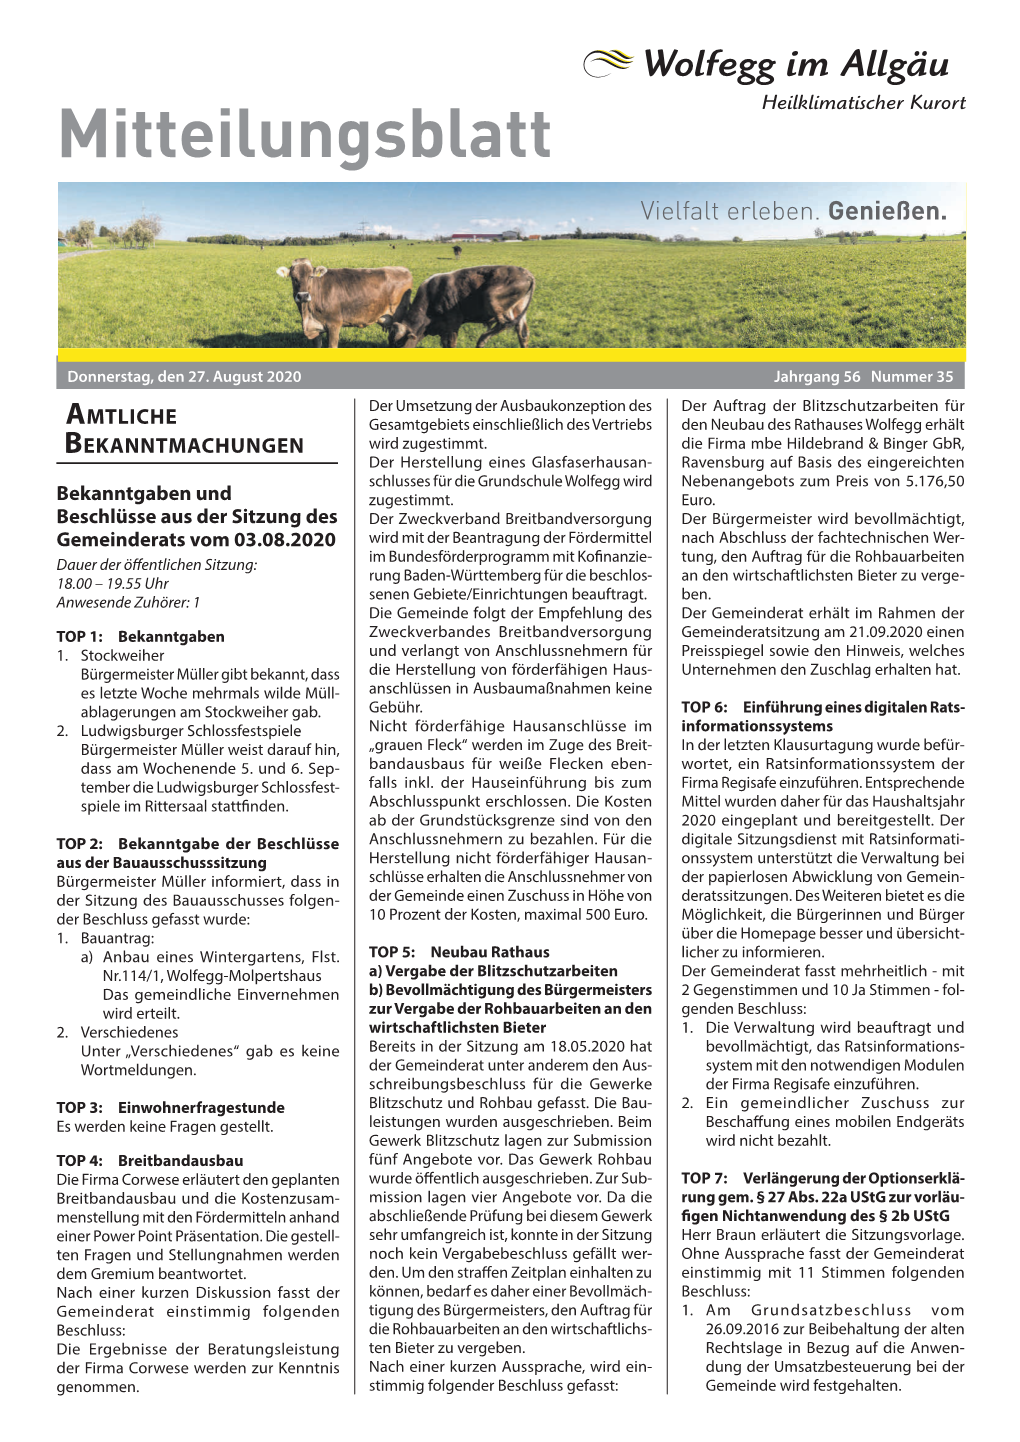 Mitteilungsblatt KW35/2020